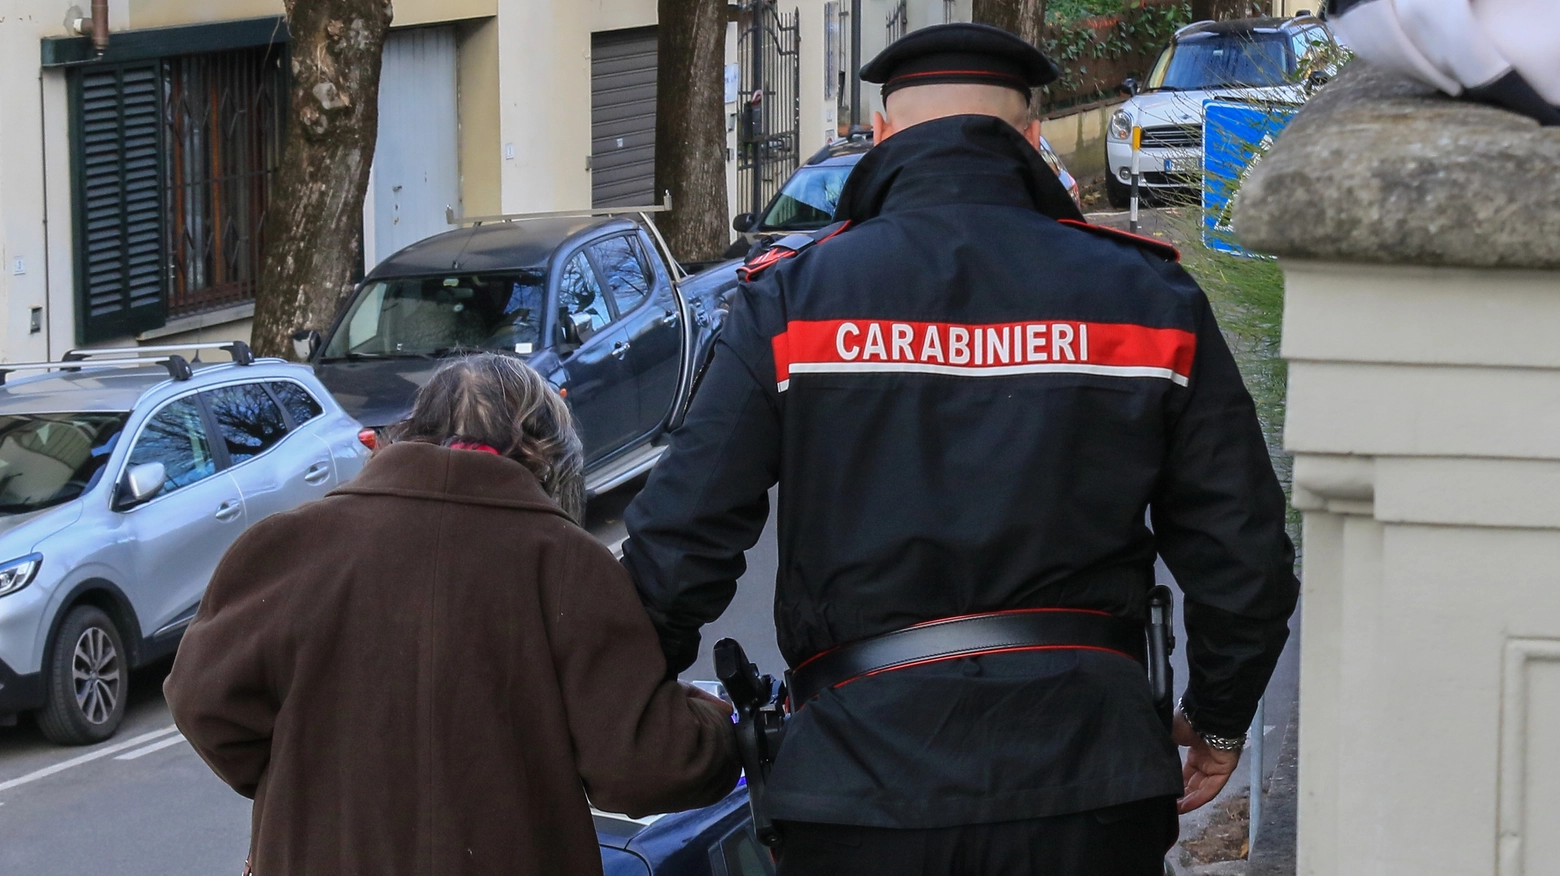 Il giovane fermato mentre stava truffando una 72enne. Il bottino da 8mila euro recuperato e restituito ai legittimi proprietari. Si cerca il suo complice